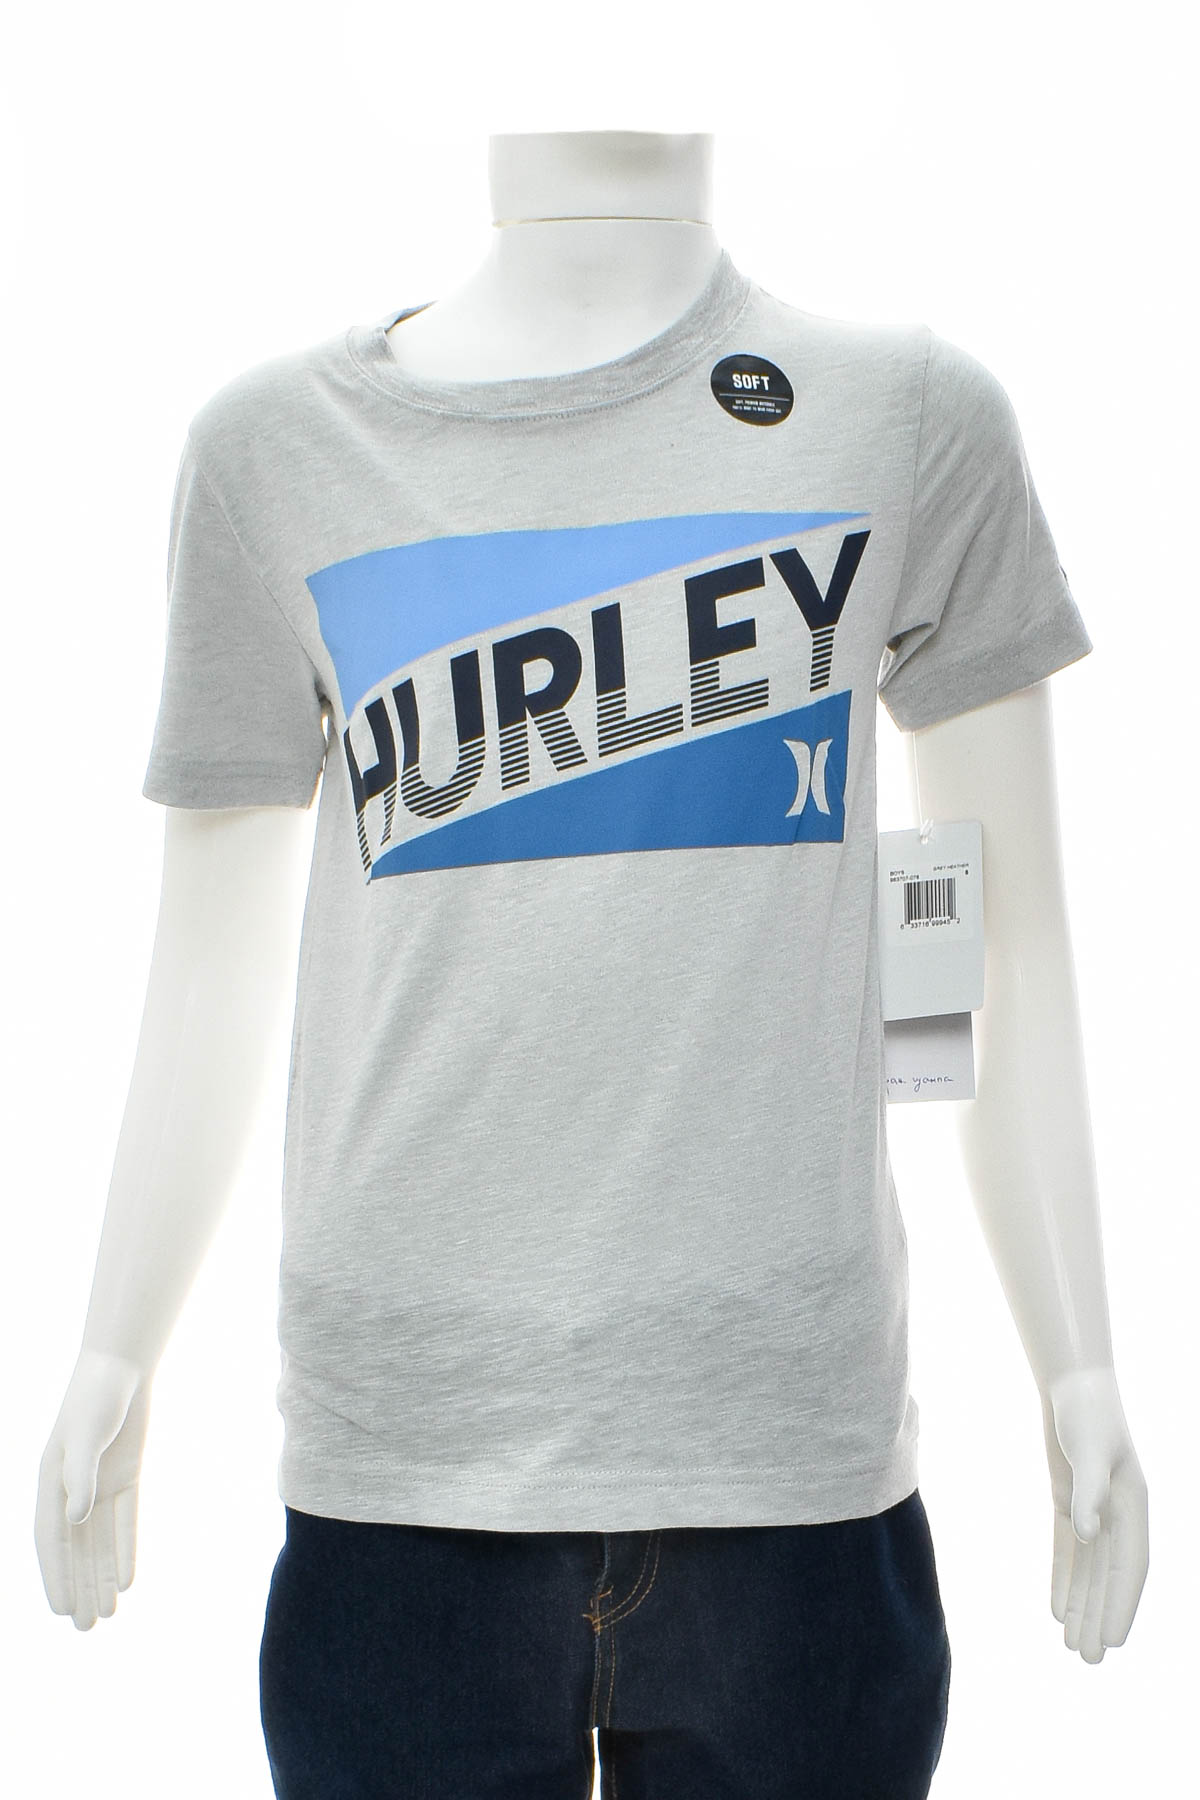 T-shirt για αγόρι - Hurley - 0